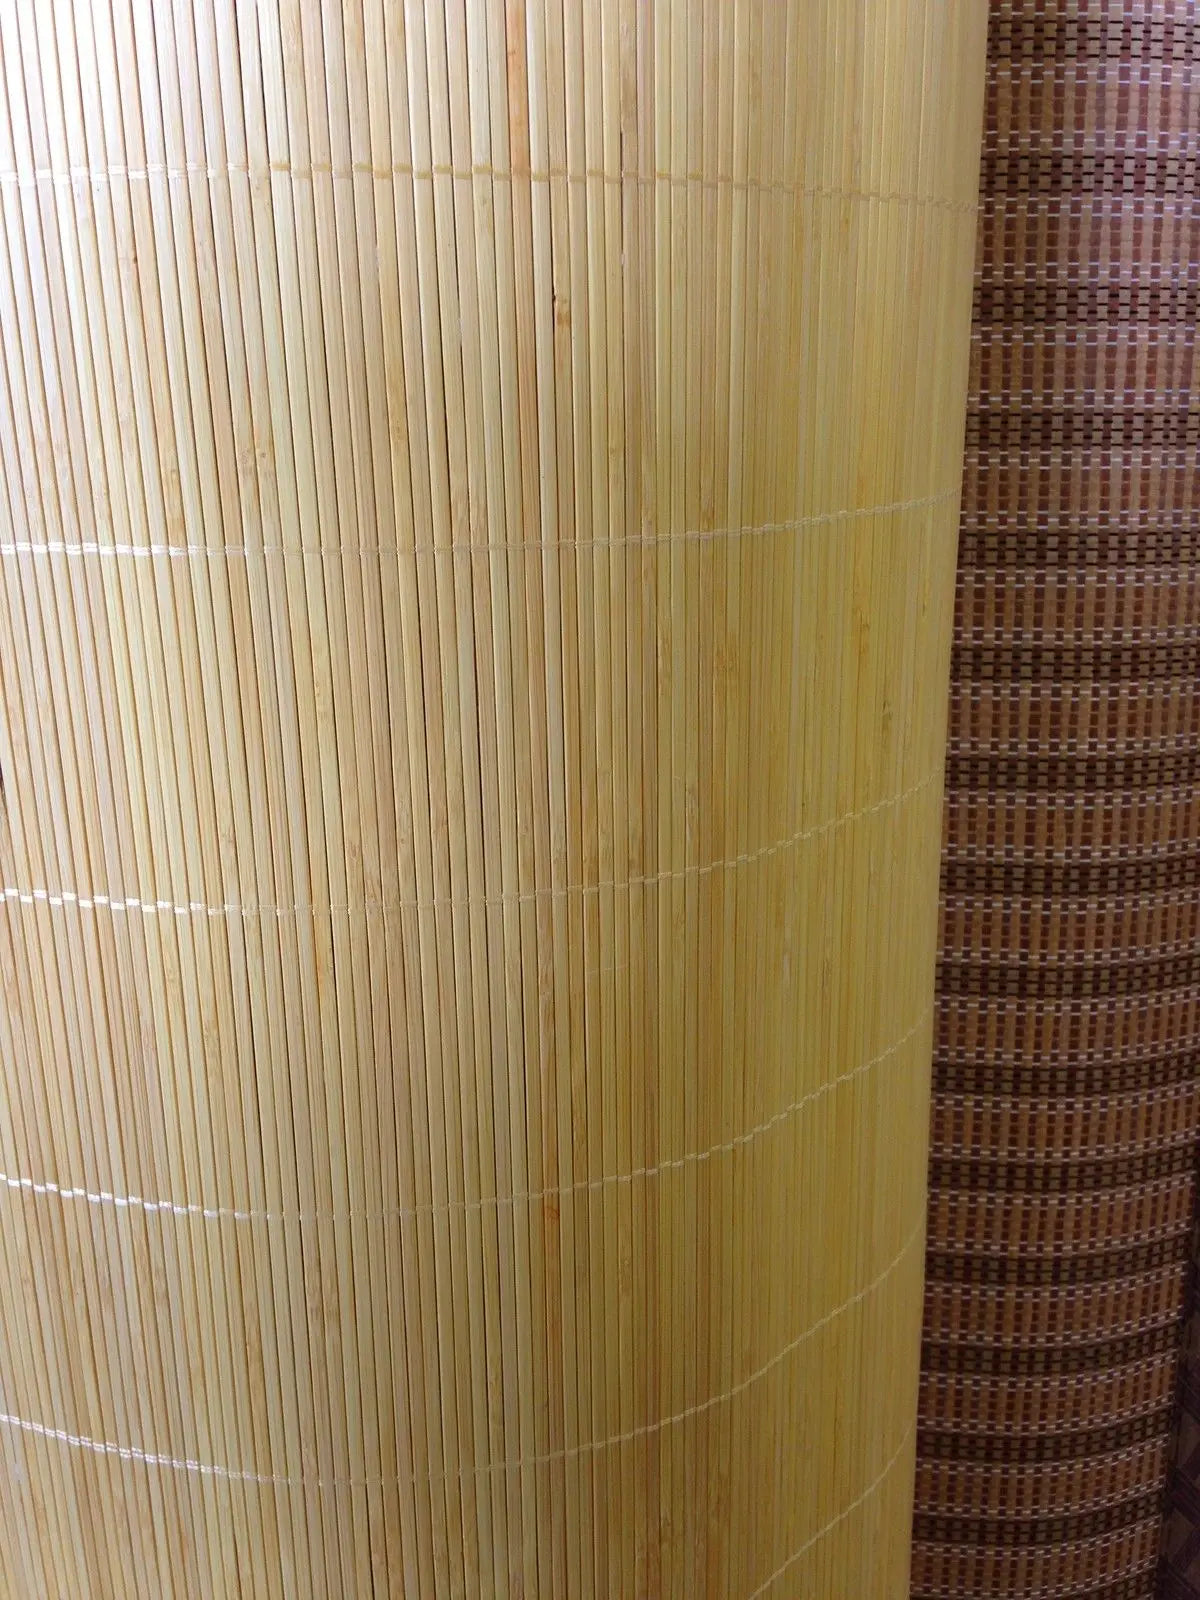 Bamboo Bed Mat Cool Summer Mat Both Side Sheet Rug Floor Mat Mattress Topper 夏季双面折叠原色竹席凉席 BMR01 everythingbamboo